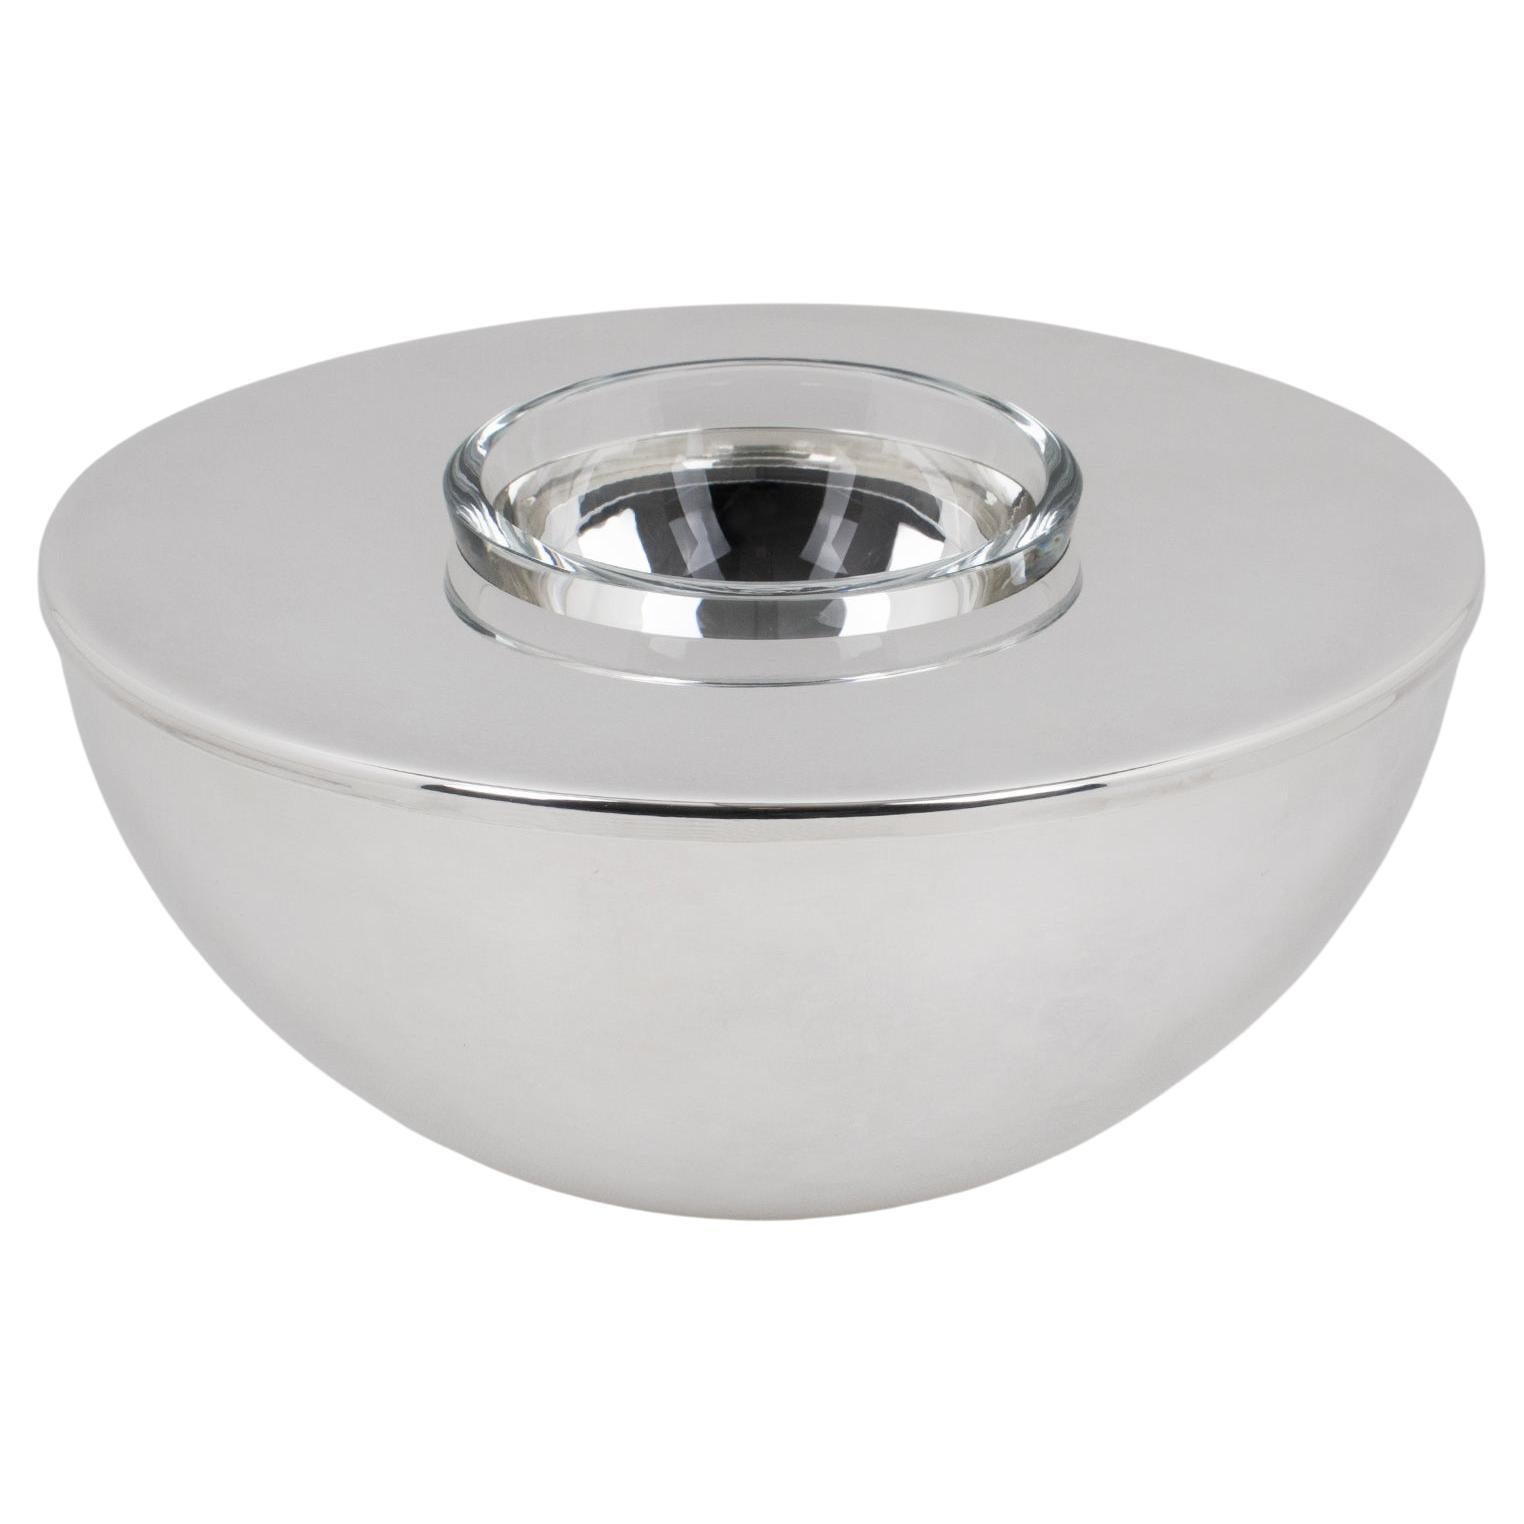 Swid Powell for Calvin Klein Silver Plate and Crystal Caviar Bowl Dish Chiller (assiette réfrigérante en métal argenté et cristal) en vente